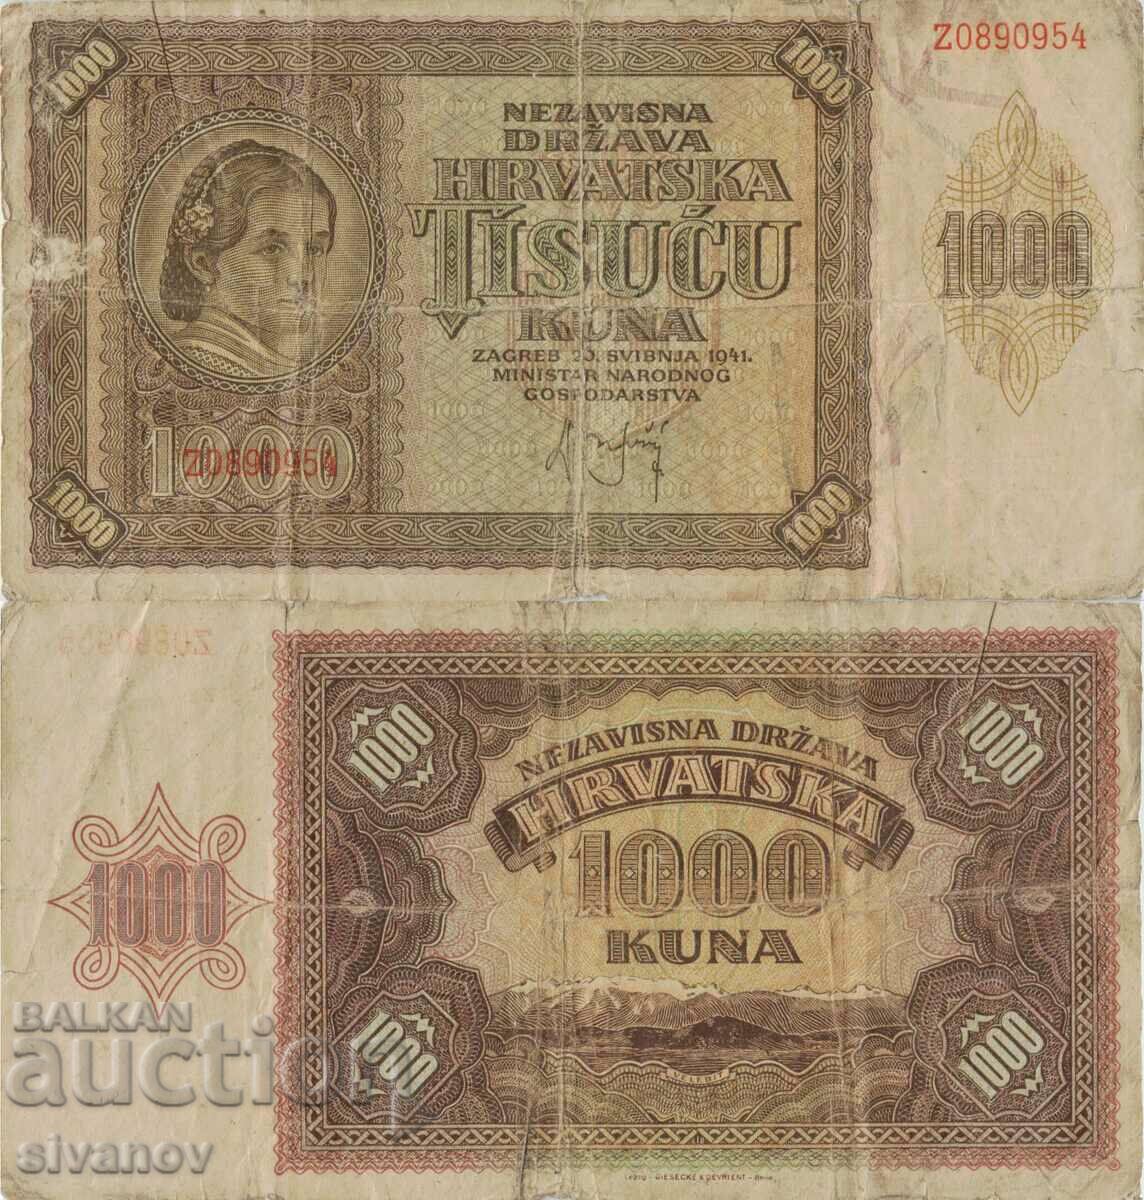 Croatia 1000 kuna 1941 banknote #5322